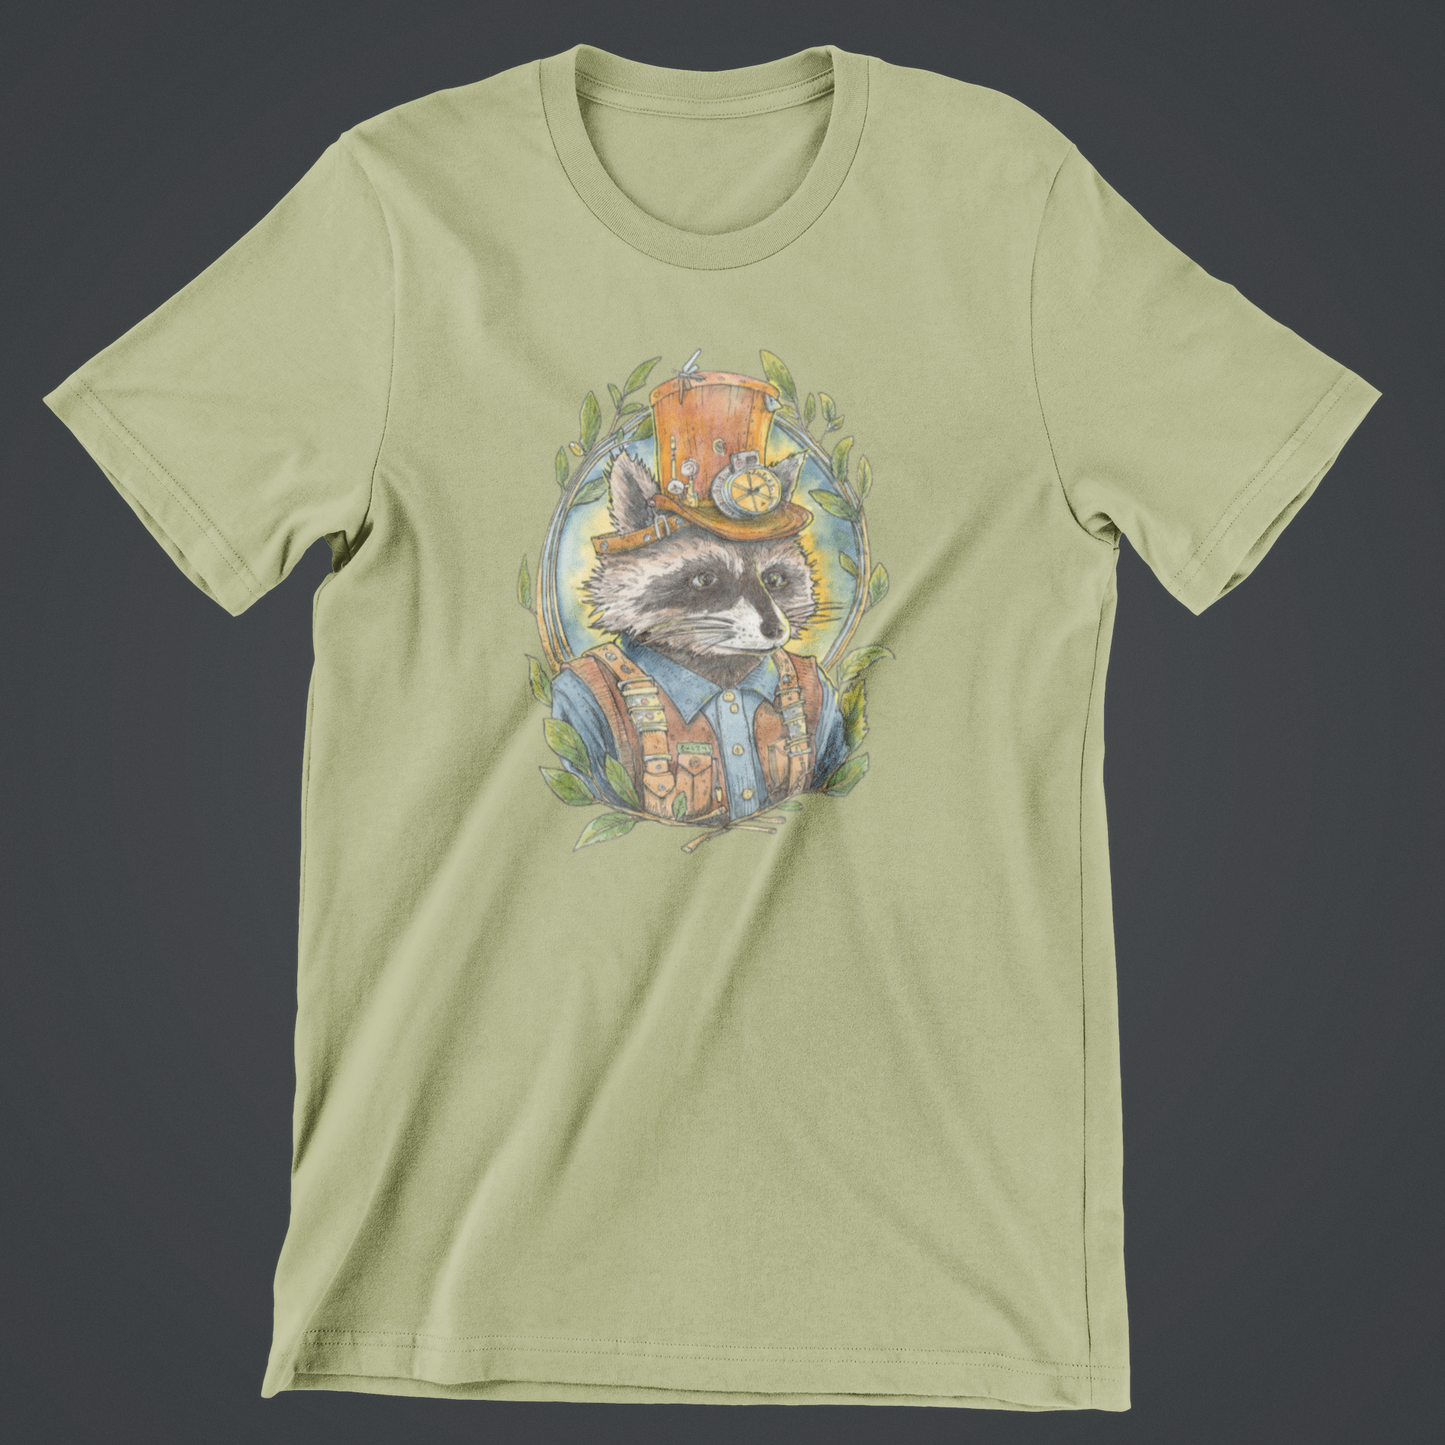 Steampunk Raccoon T-Shirt Design by Robert R Norman